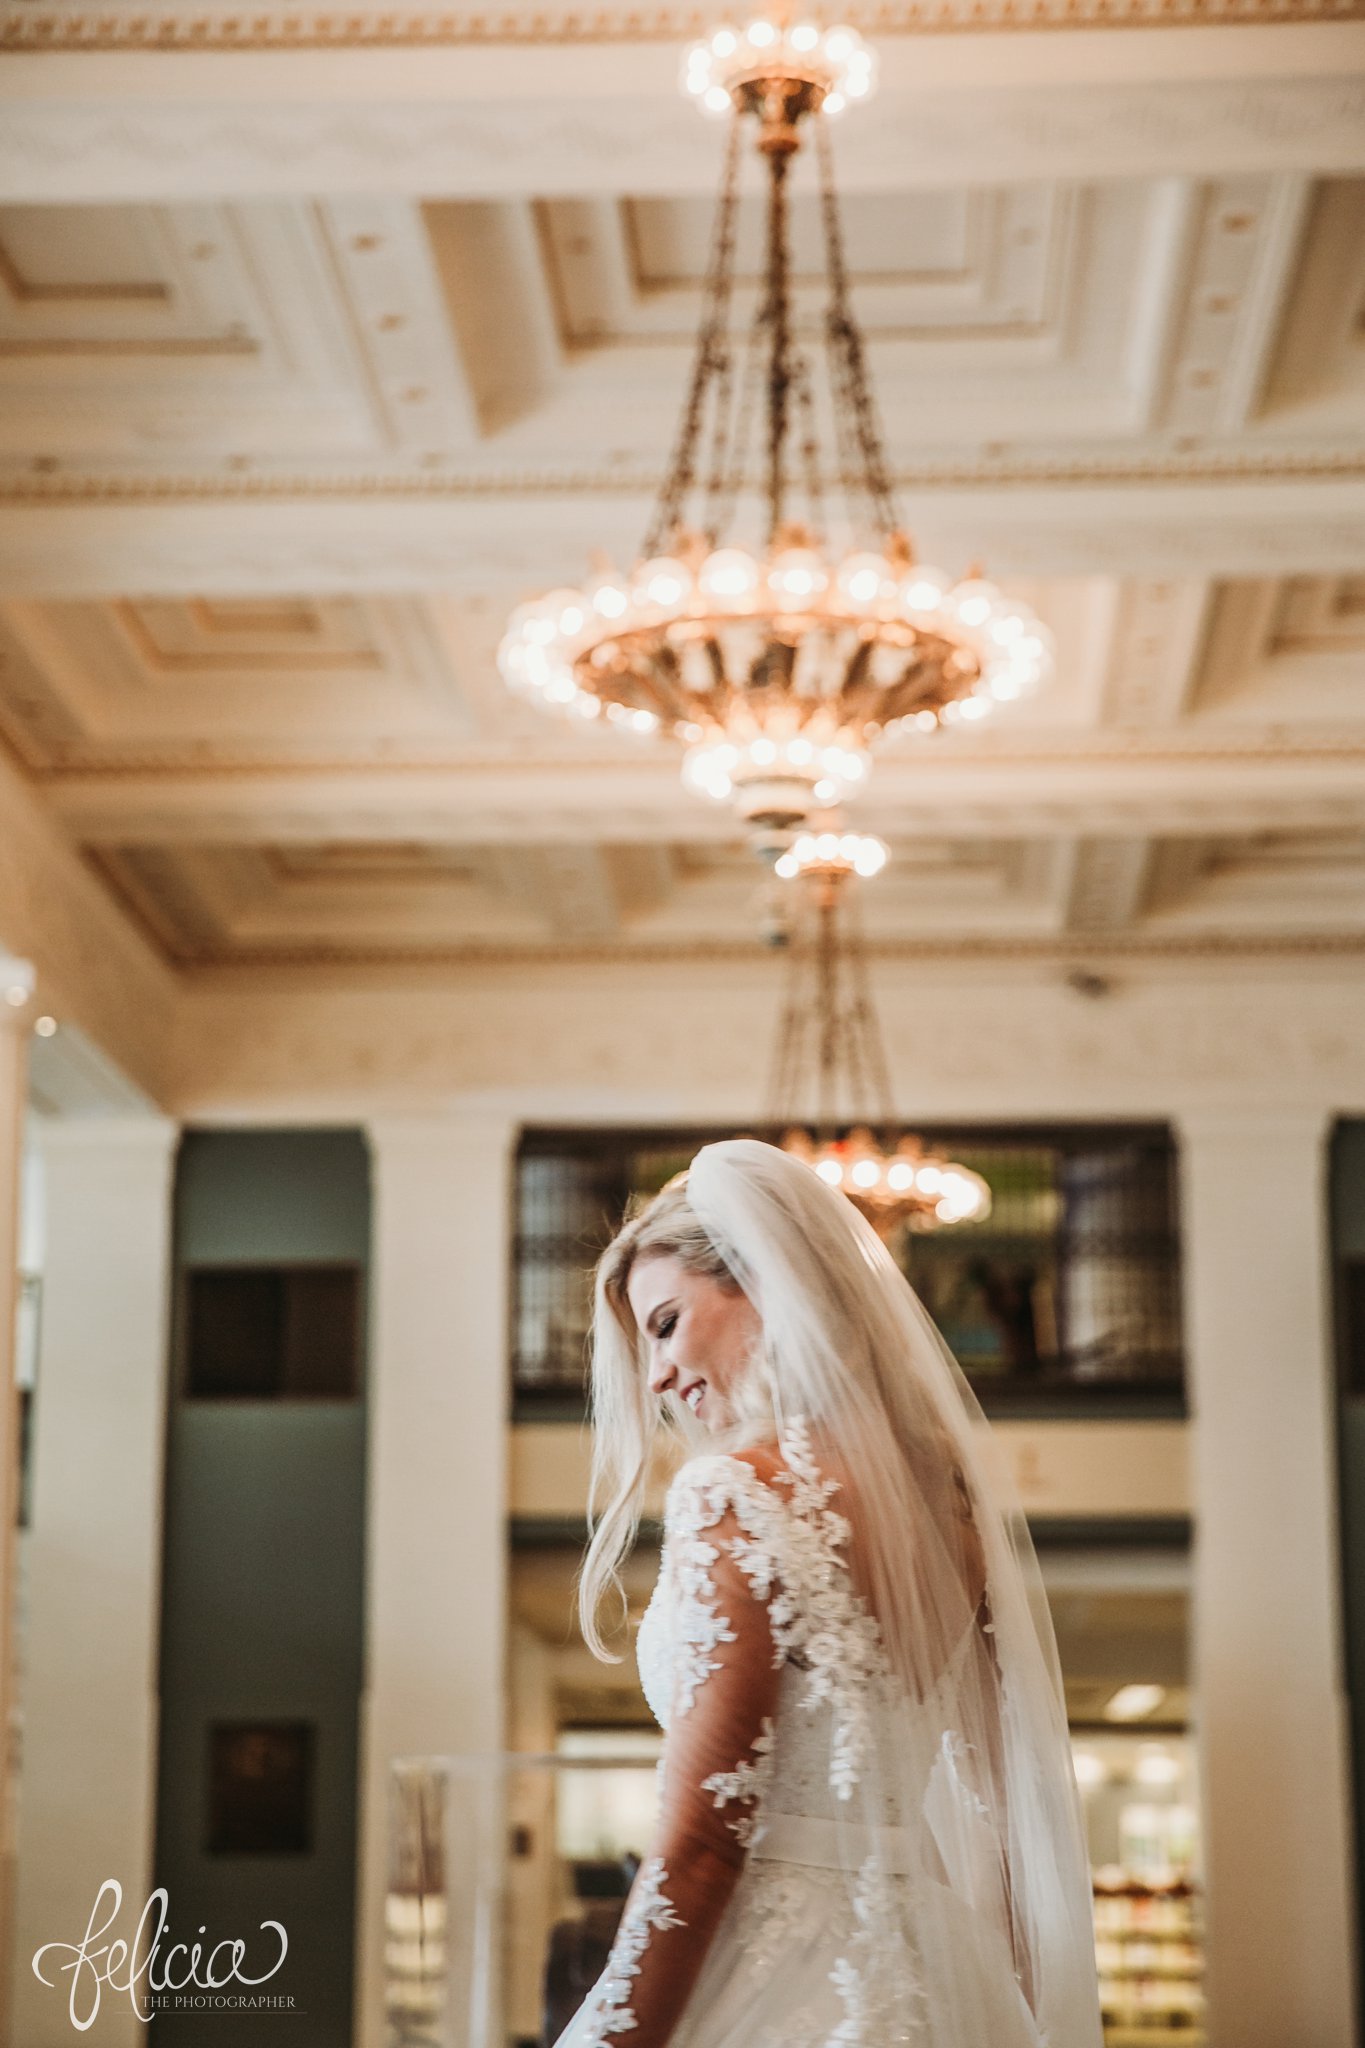 images by feliciathephotographer.com | wedding photographer | kansas city | redemptorist | classic | whimsical | romantic | chandelier | bride | lace dress | portrait | belle vogue | joy | veil | long sleeve |